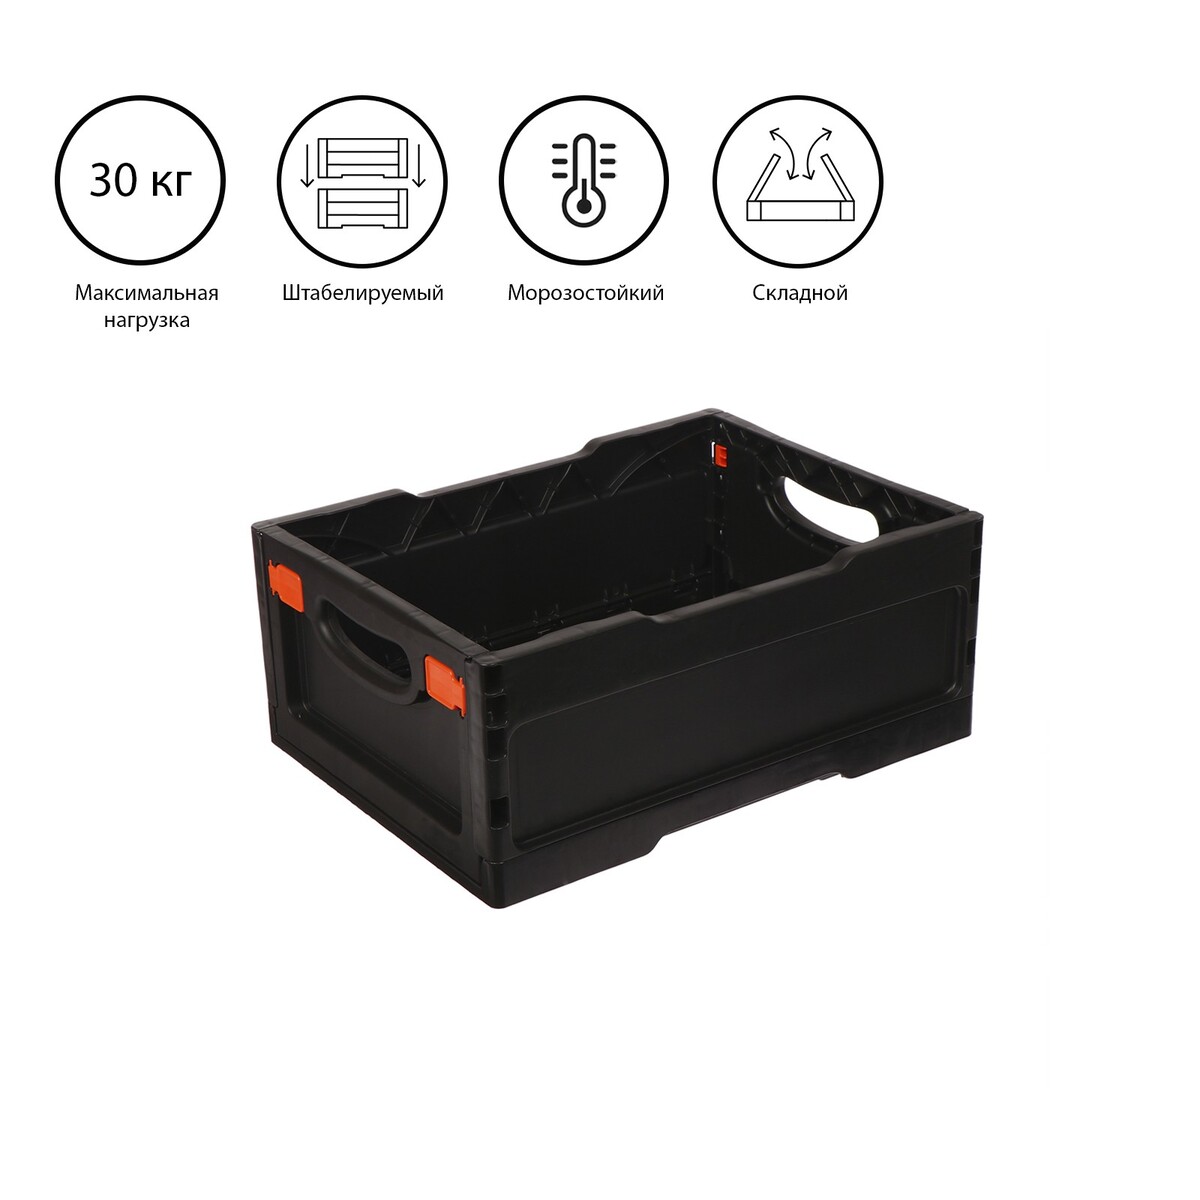 Ящик складной, пластиковый, 40 × 30 × 17 см, черный трикап табурет складной пластиковый большой kg